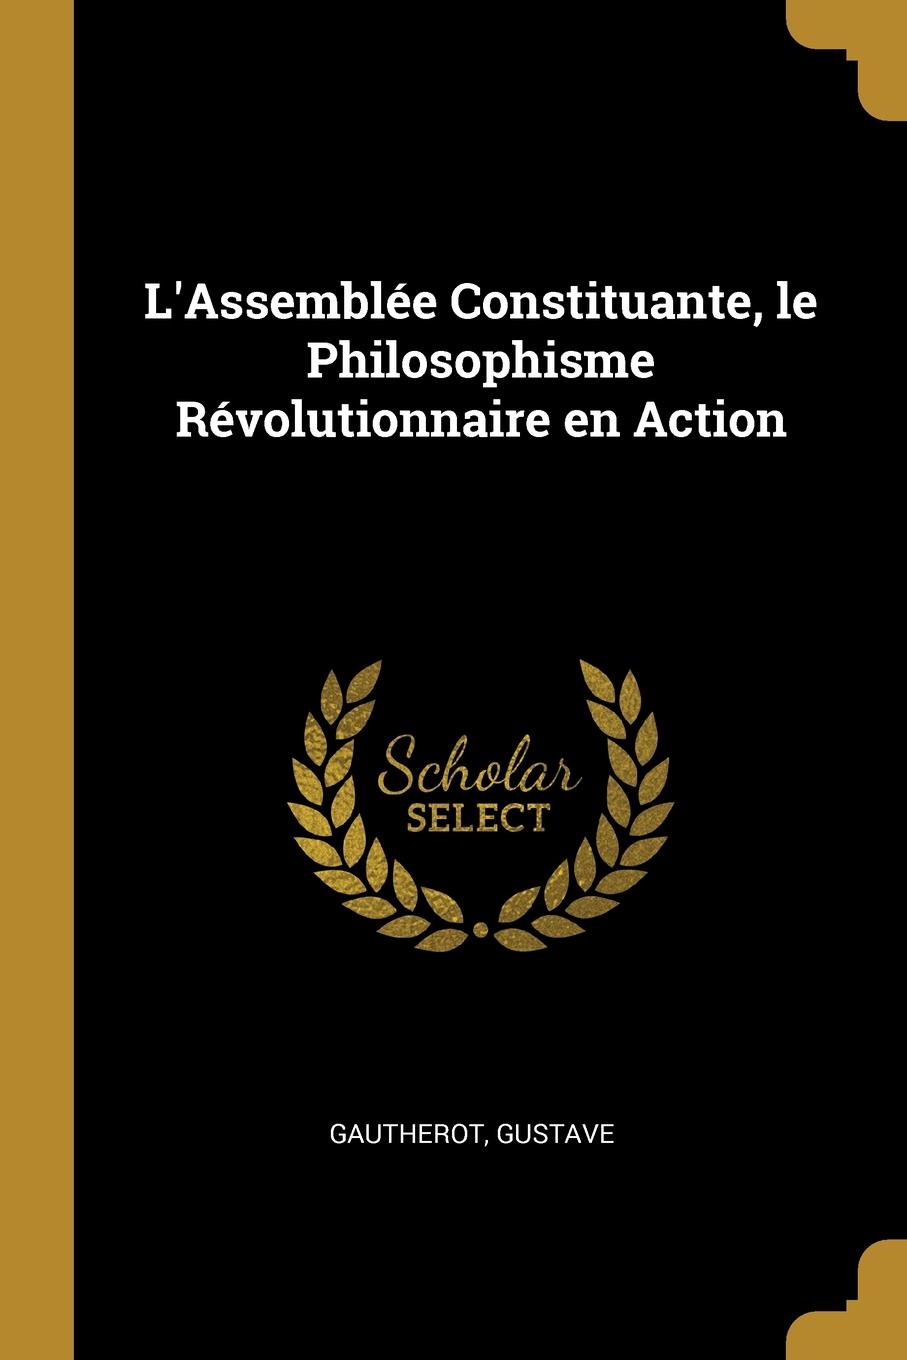 L.Assemblee Constituante, le Philosophisme Revolutionnaire en Action